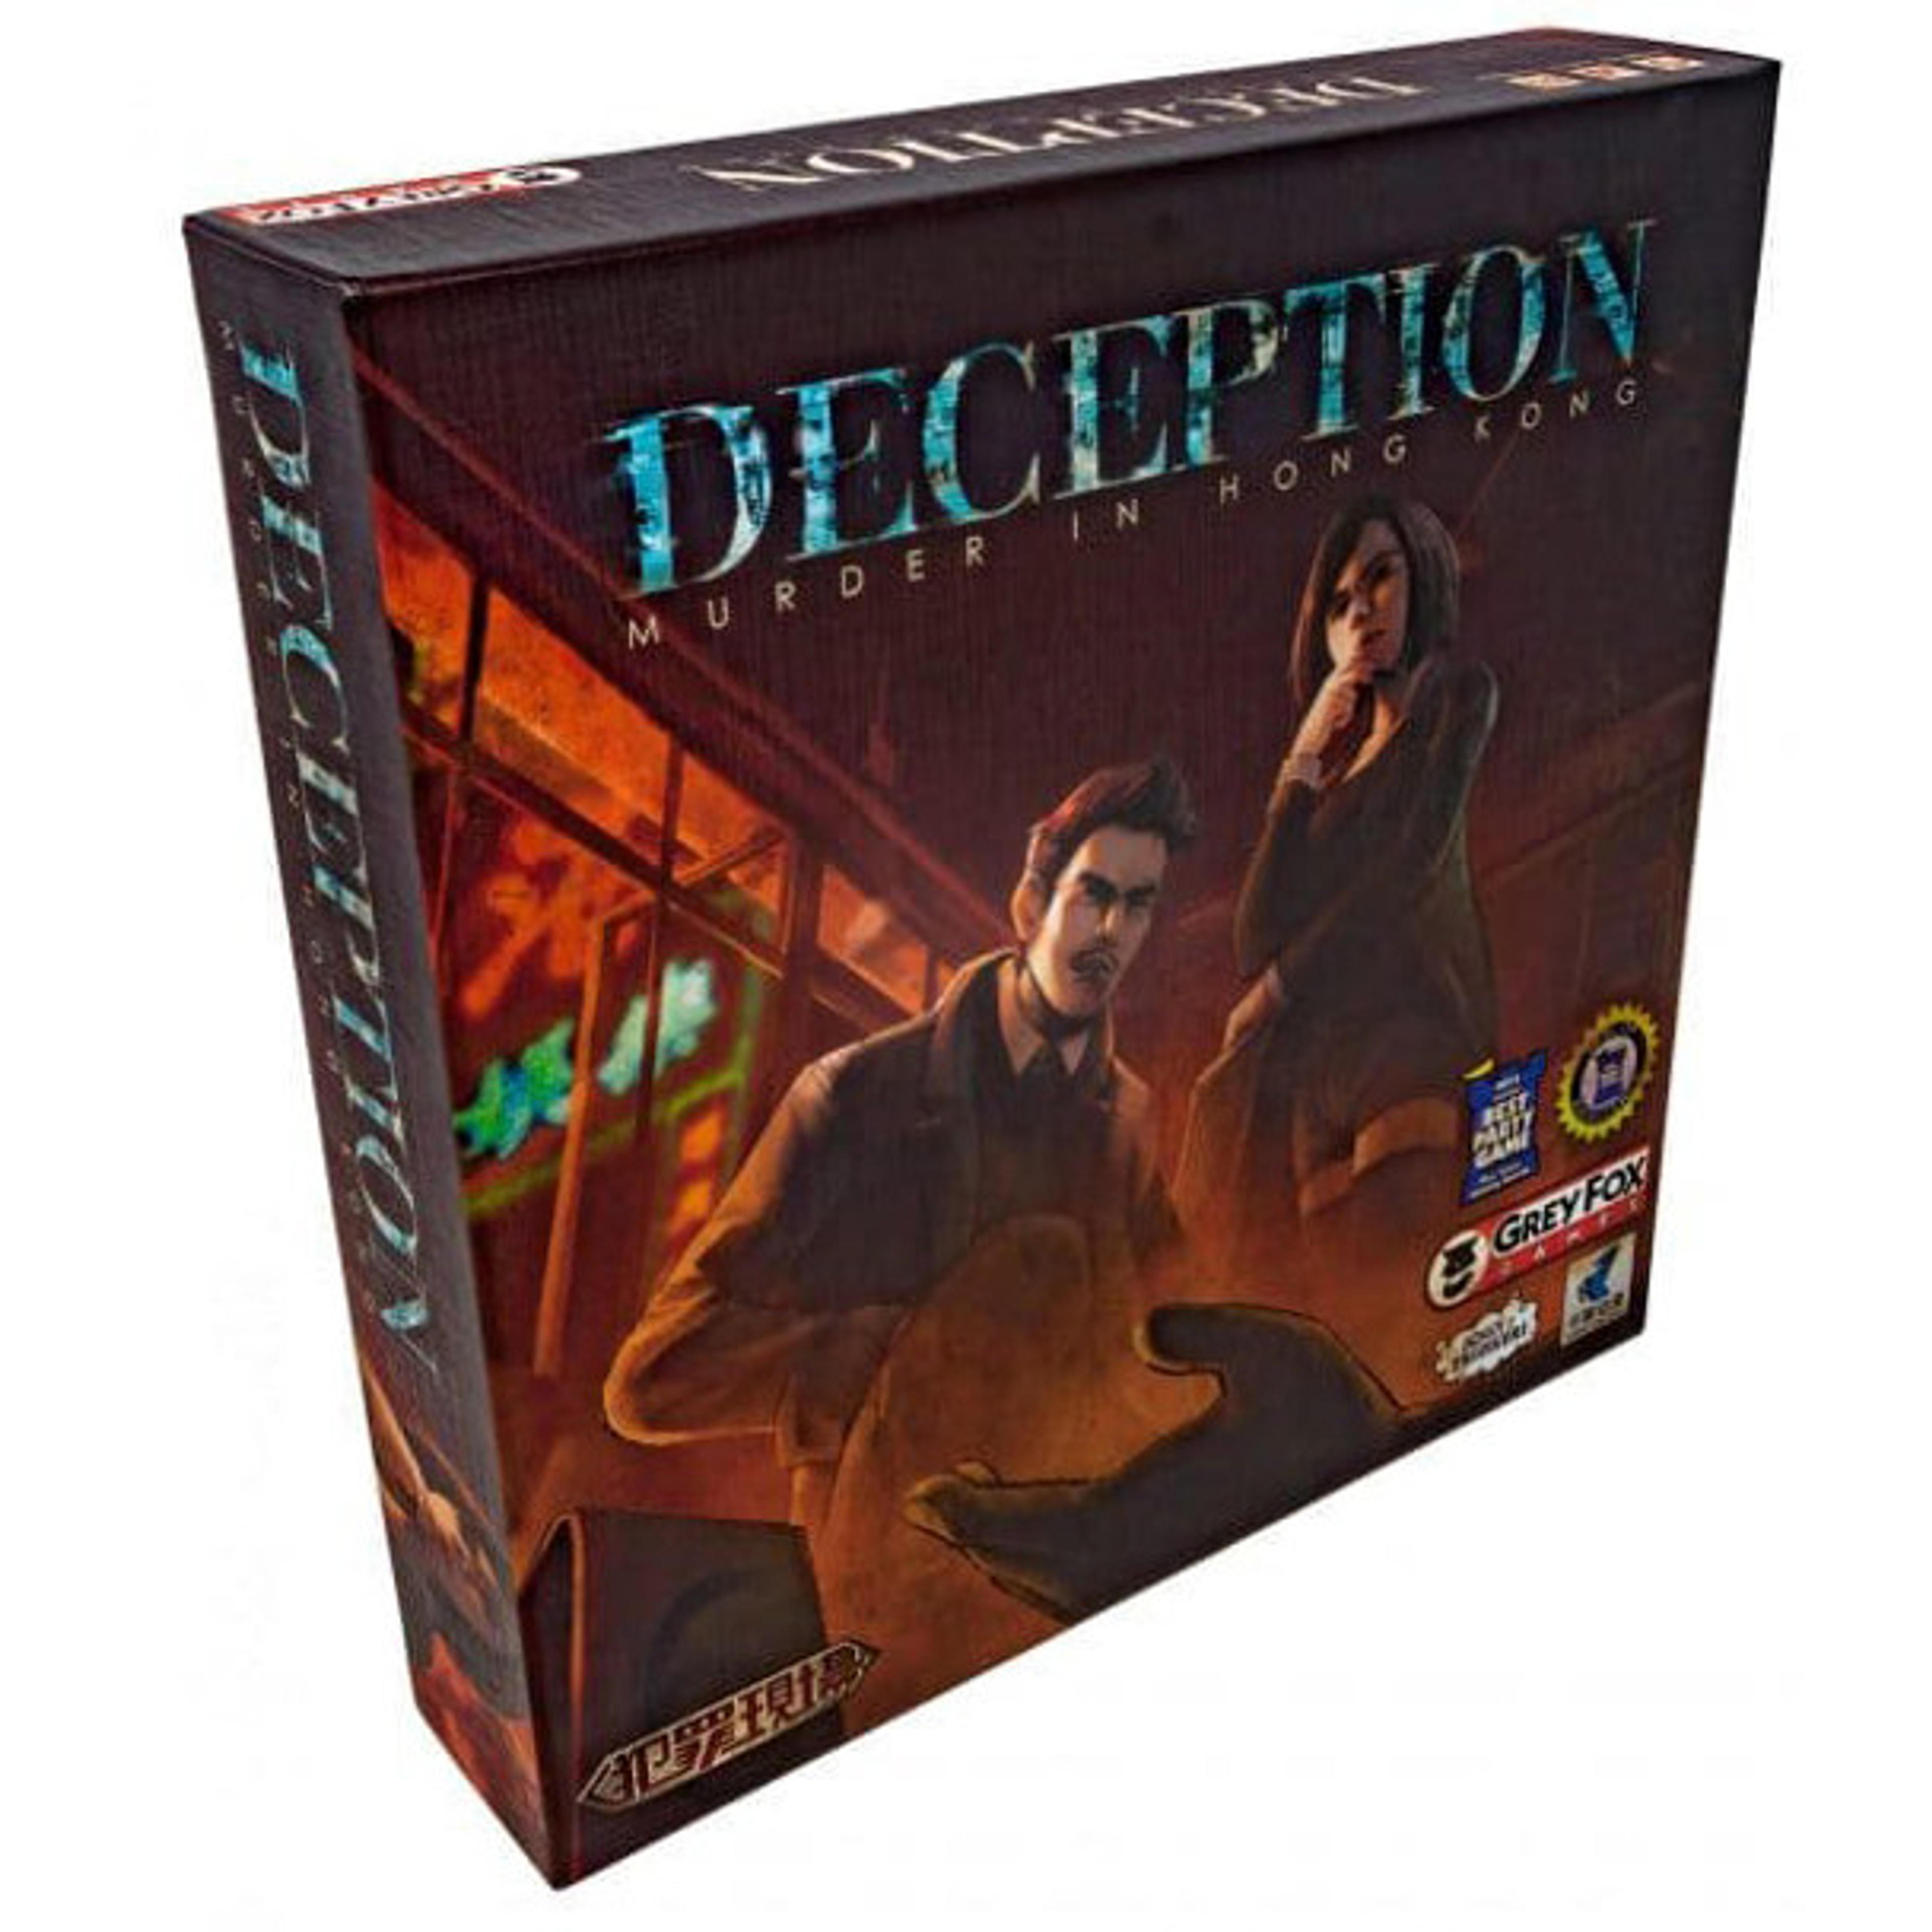 Deception: Murder in Hong Kong - Grey Fox Games